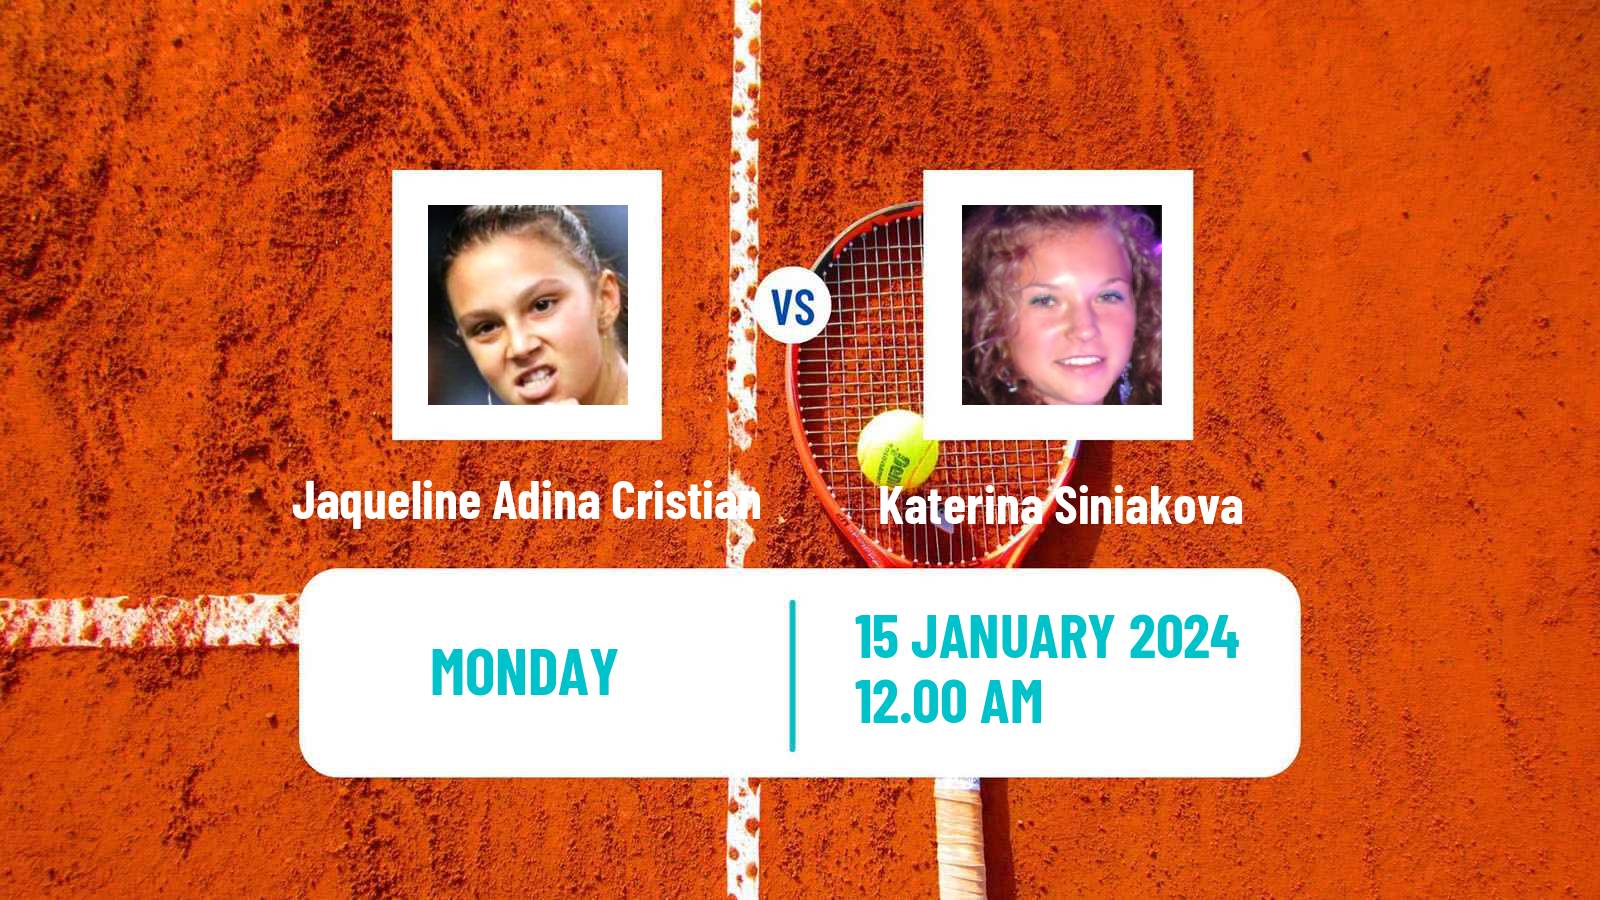 Tennis WTA Australian Open Jaqueline Adina Cristian - Katerina Siniakova